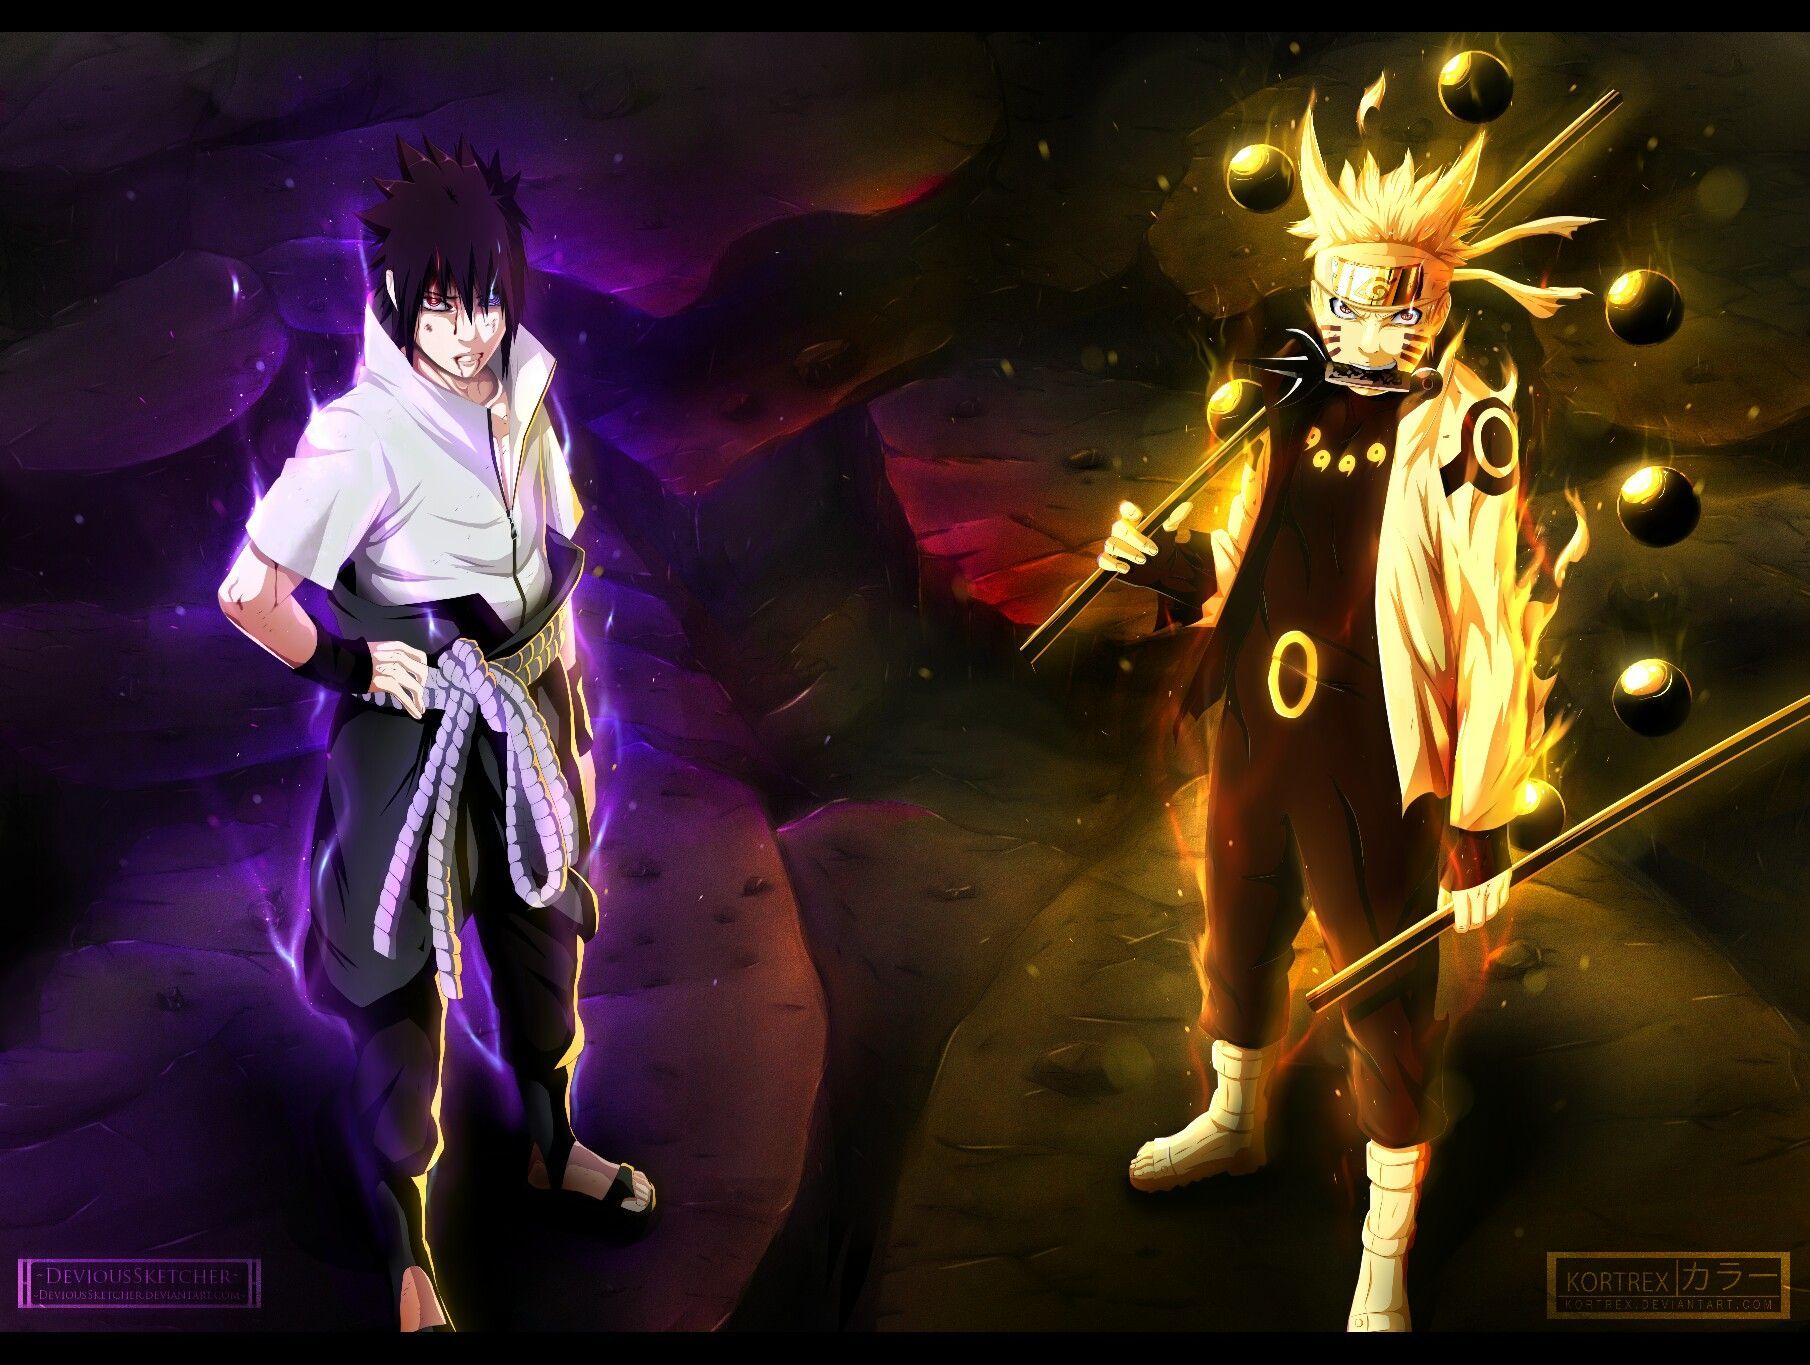 Naruto and Sasuke Wallpaper. Naruto wallpaper, Wallpaper naruto shippuden, Naruto and sasuke wallpaper